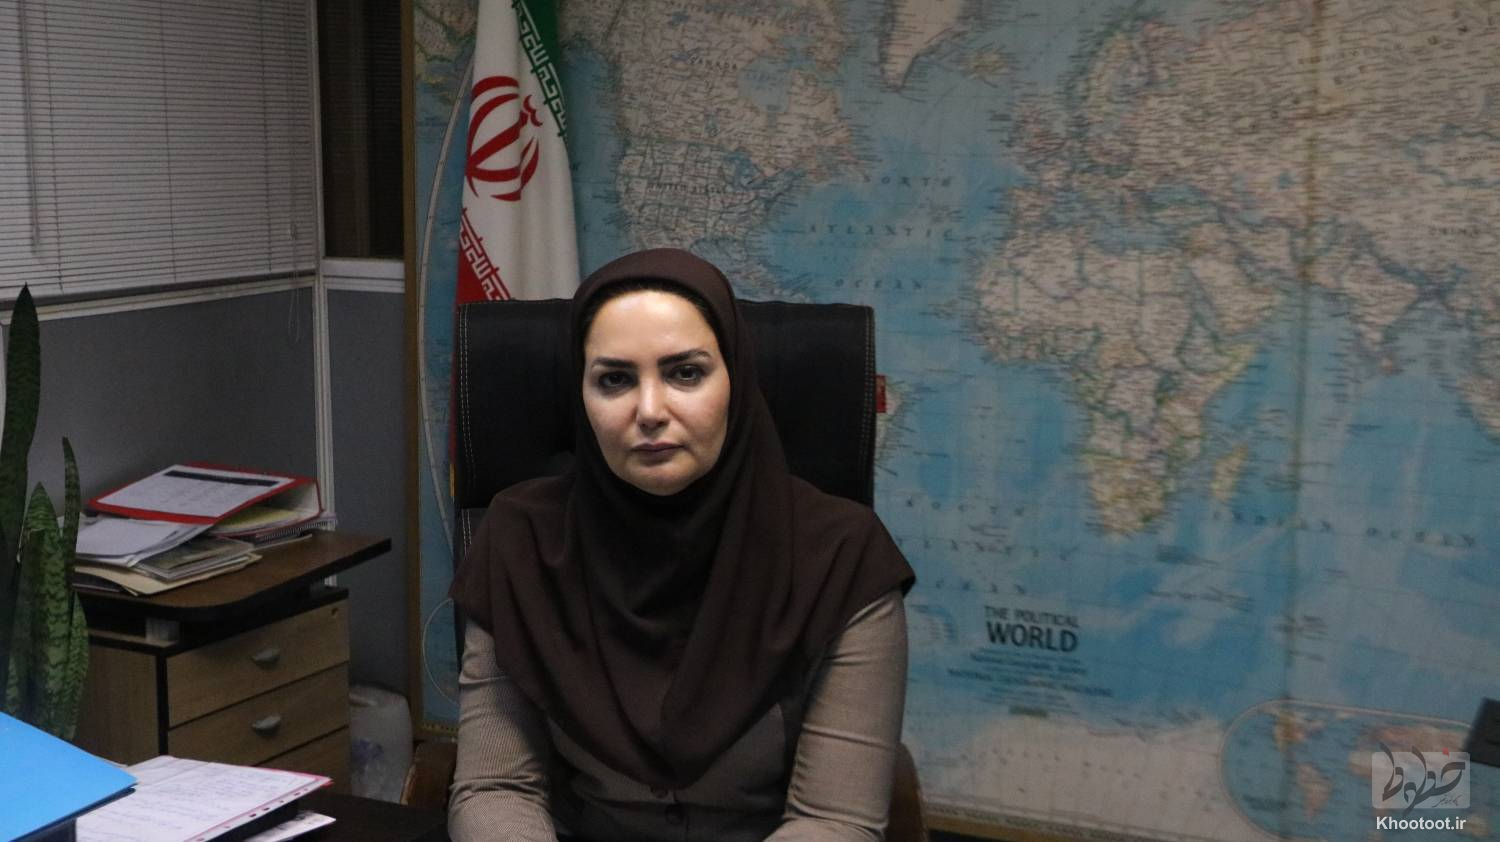 عدم برگزاری نمایشگاه ایران تلکام به مدت 2 سال/ بهترین محل برای توسعه صادرات نمایشگاه است